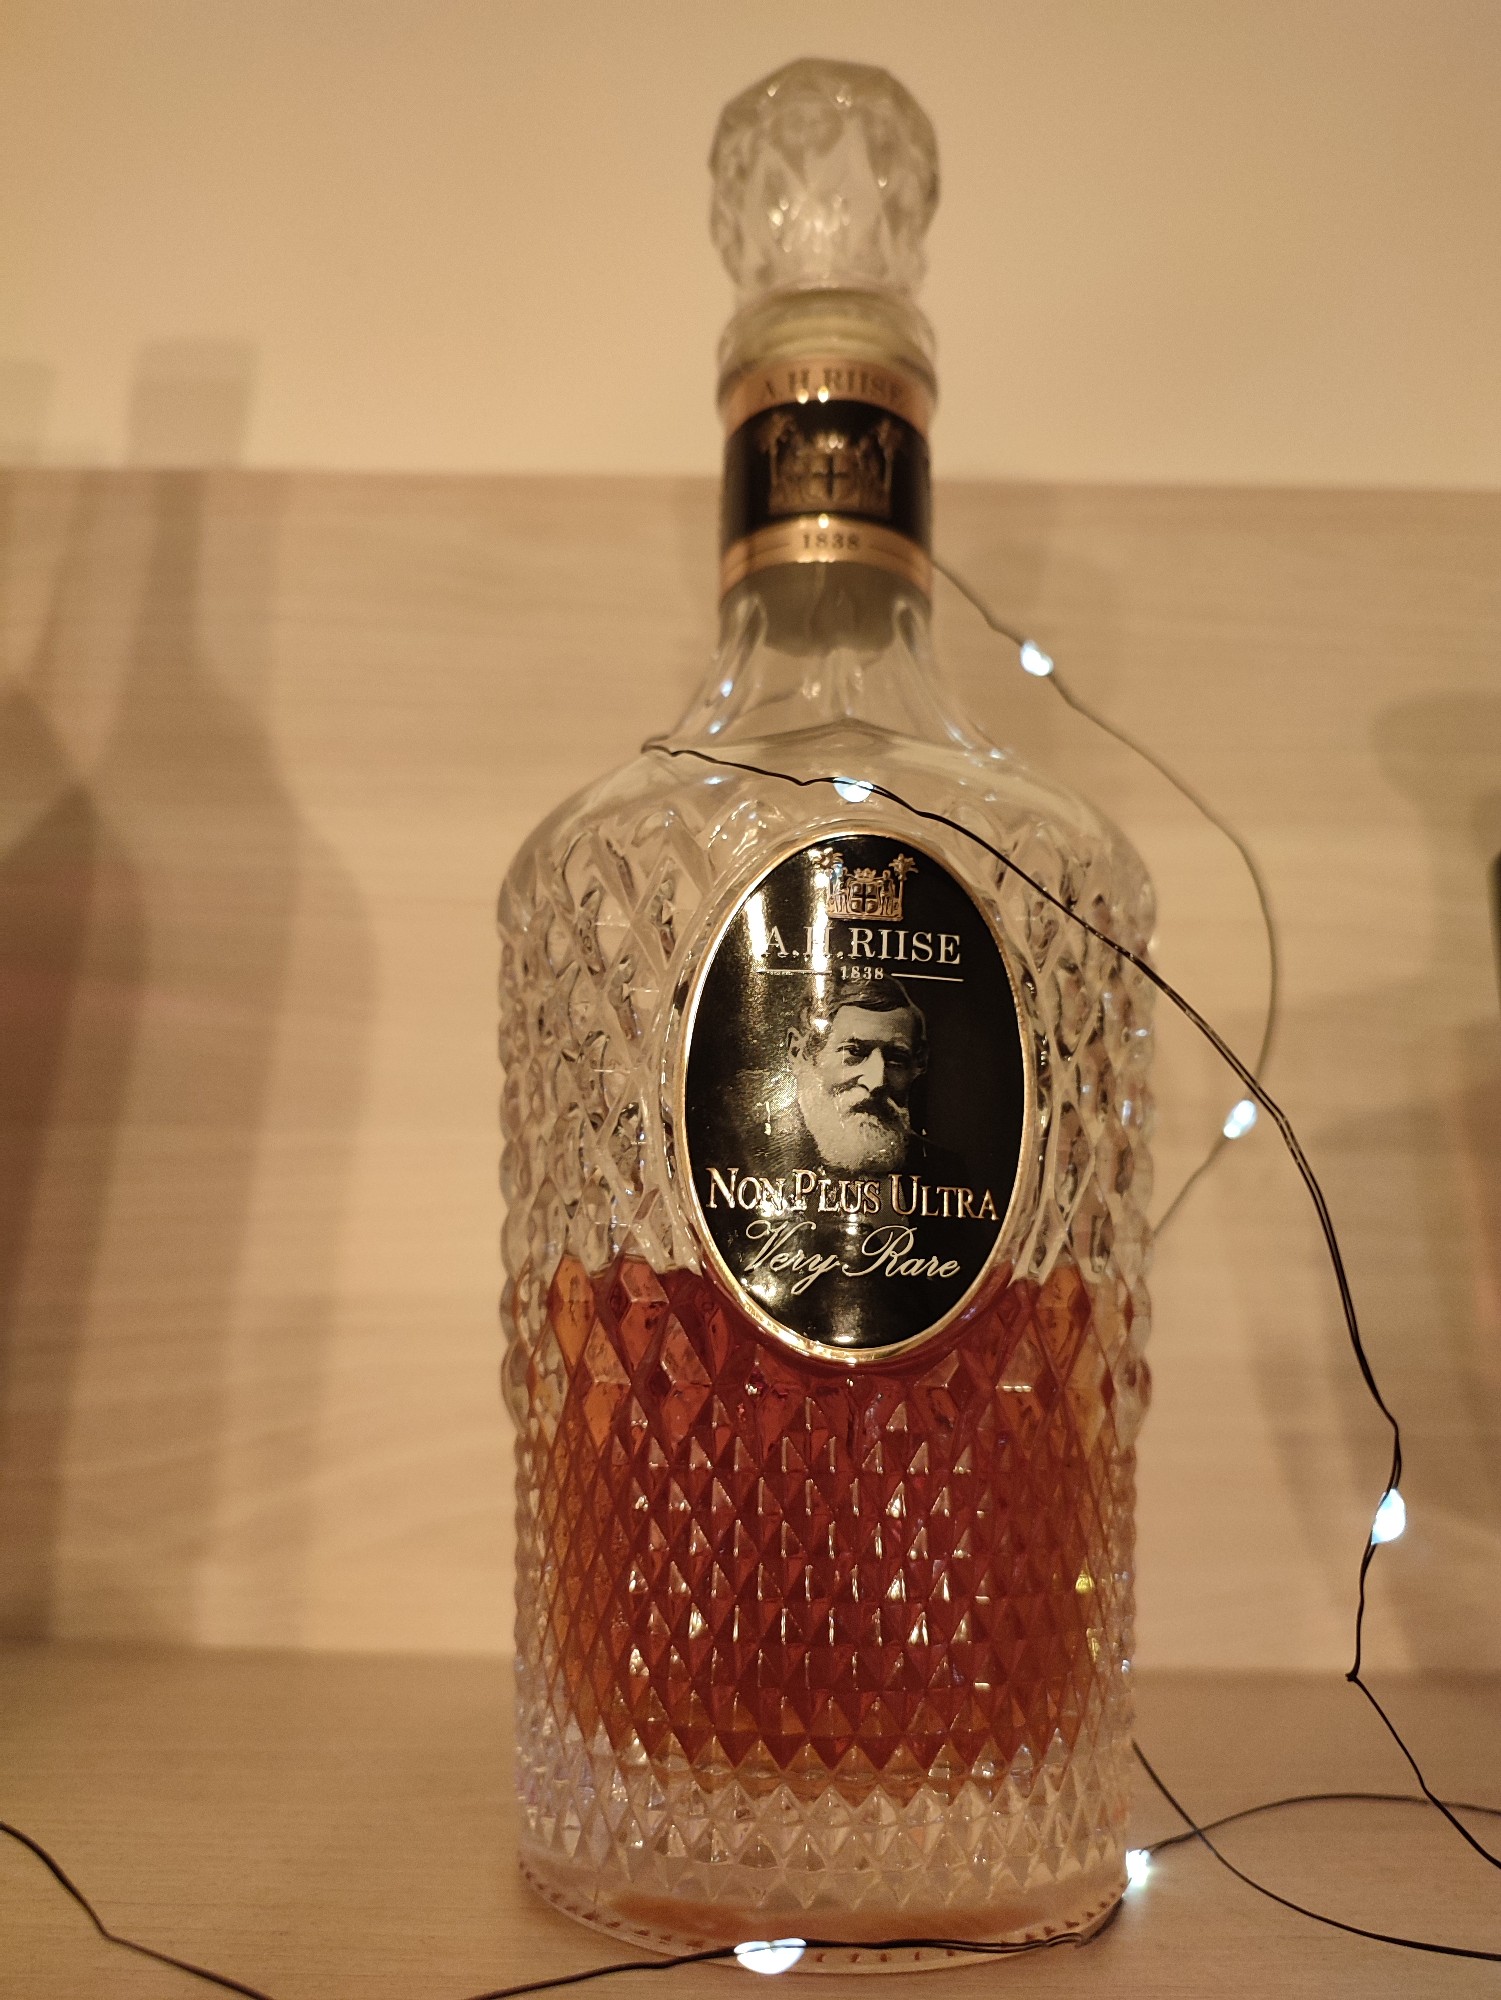 Photo of the bottle taken from user Ondra RumRunner